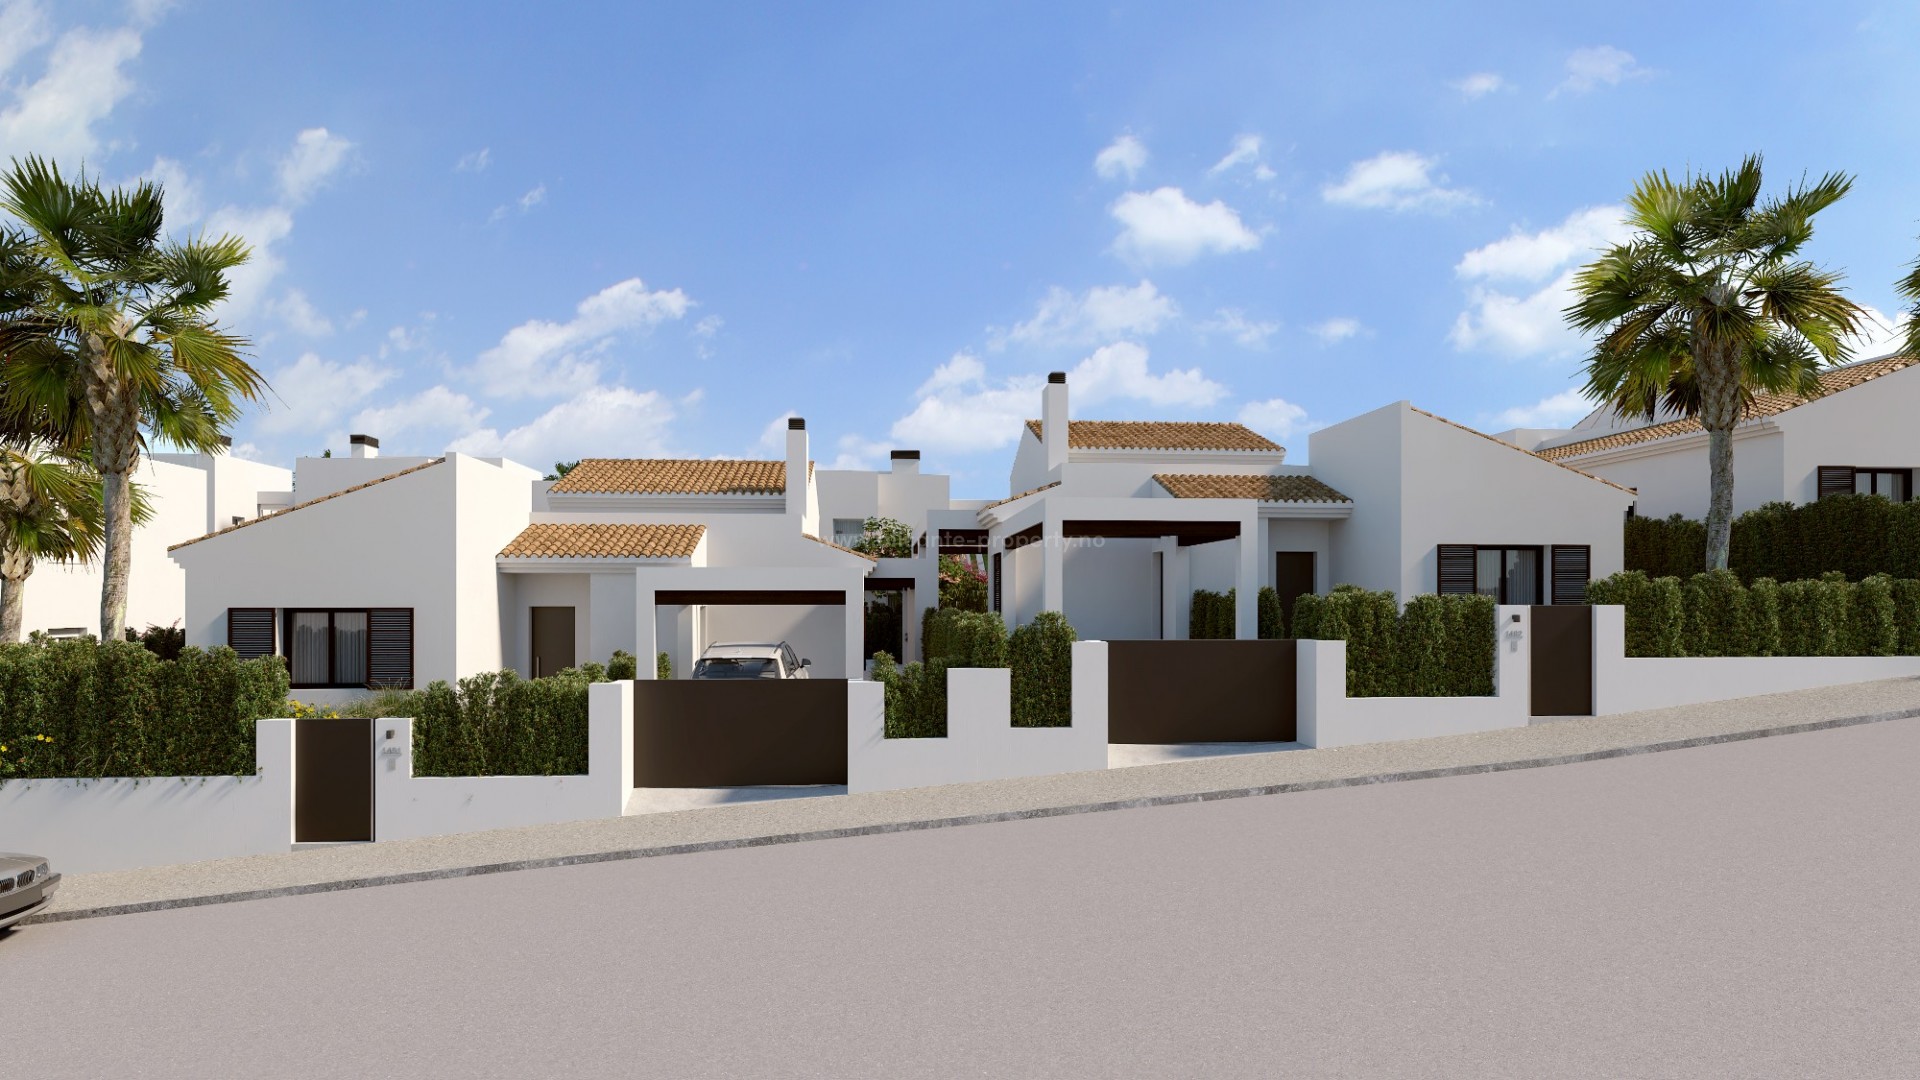 Hus/villaer på La Finca Golf Resort, 3 soverom, 2 bad, privat hage med svømmebasseng, stor terrasse, en pergola for parkering